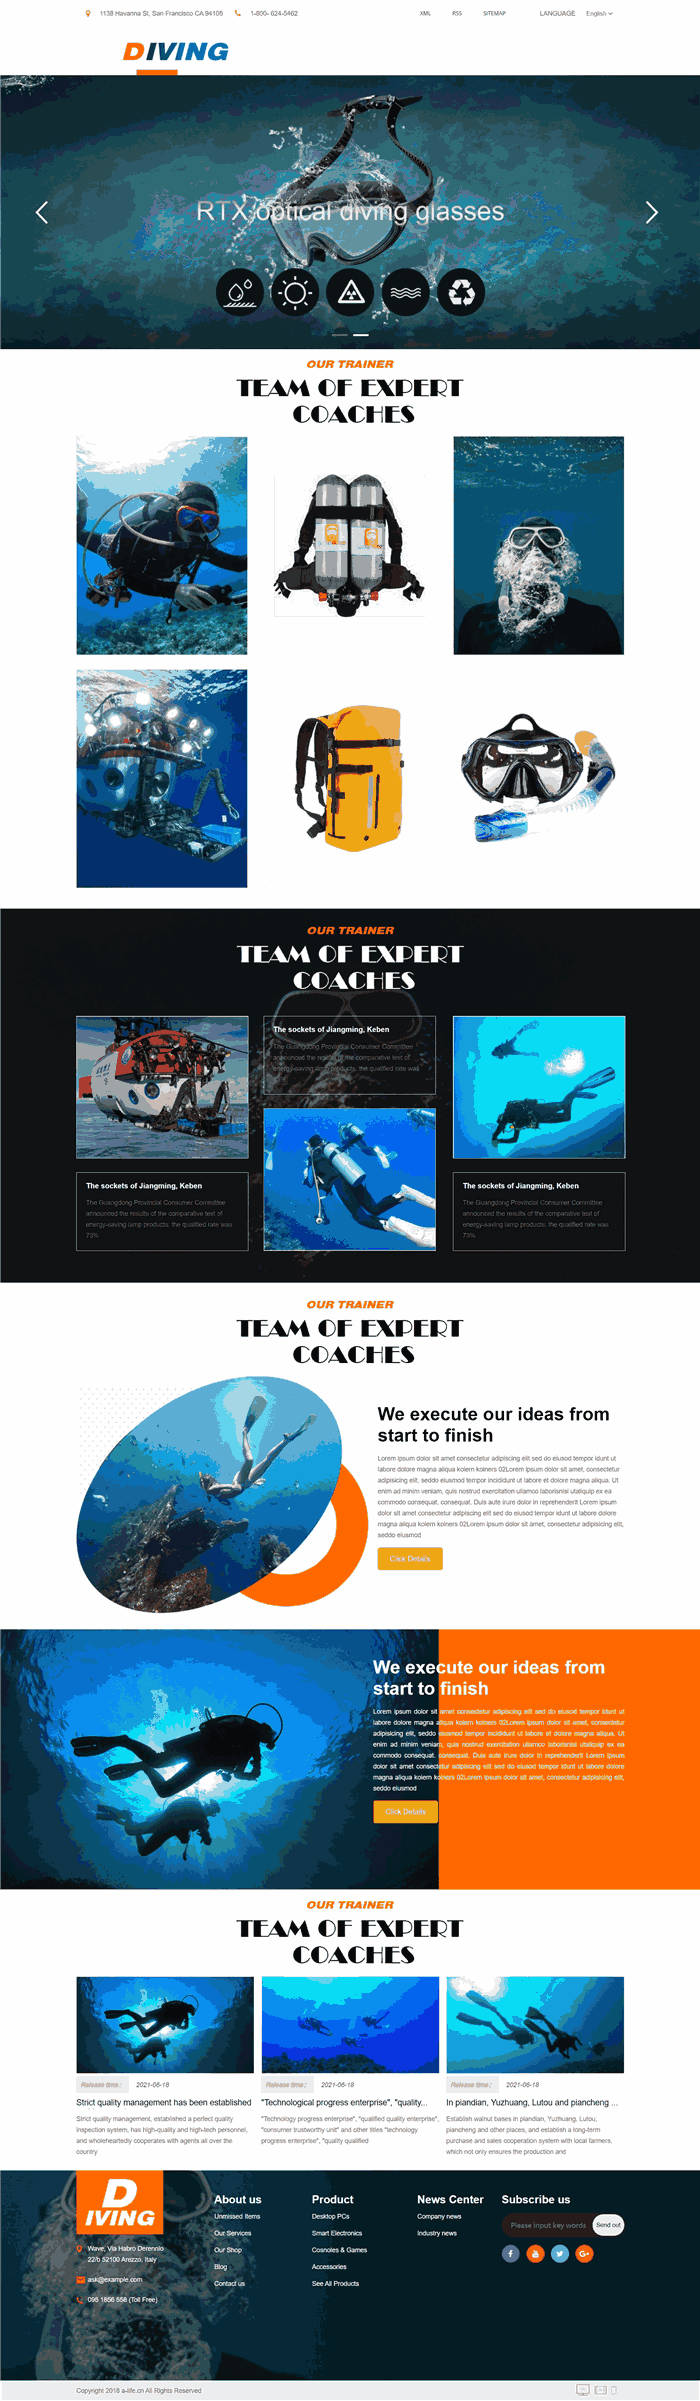 多合一外贸英文潜水装备潜海游泳设备网站WP网站模板效果图